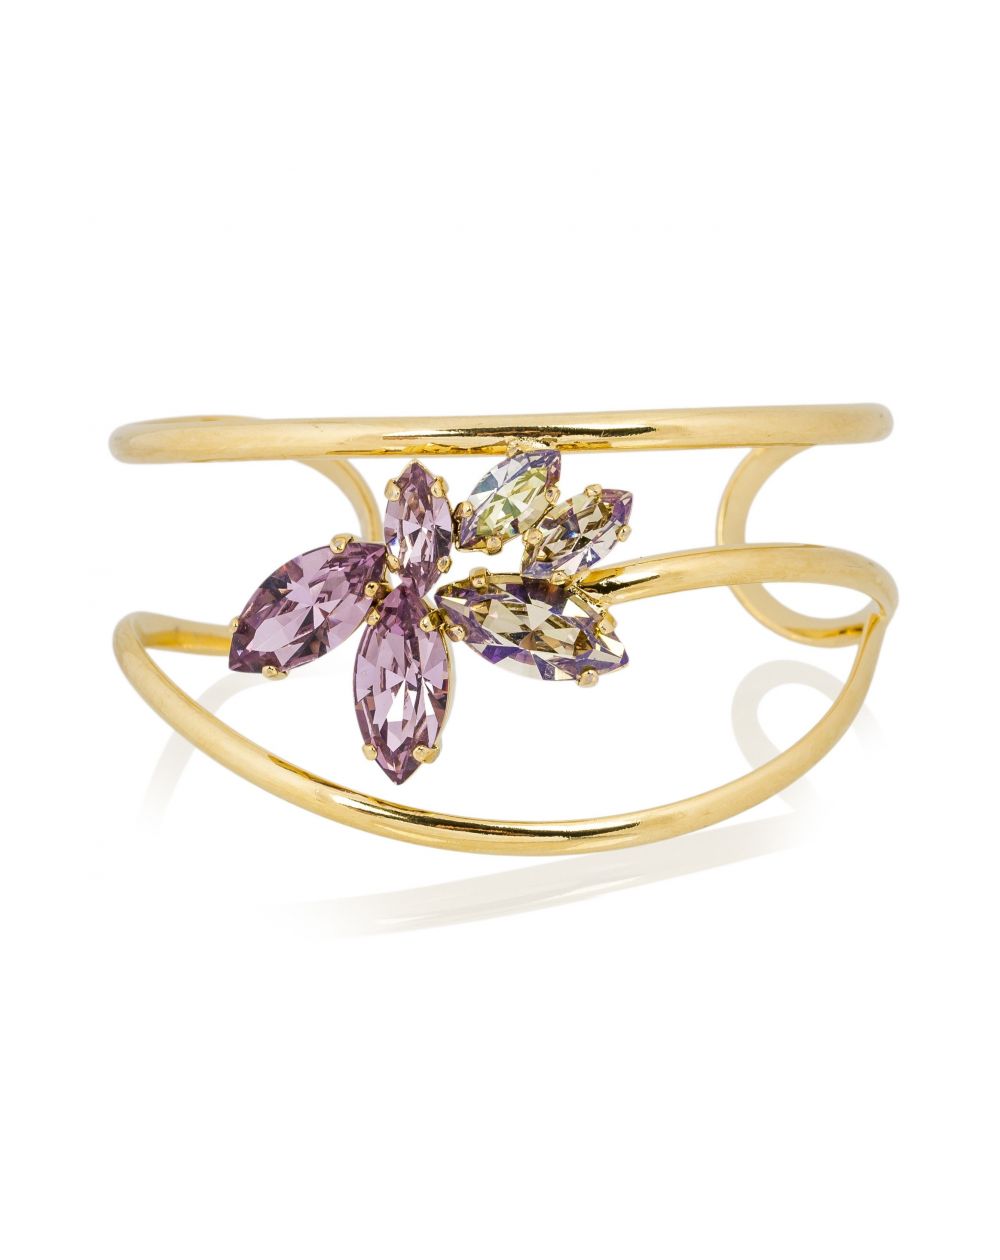 Andrea Marazzini bijoux - Bracelet cristal Swarovski Navette doré